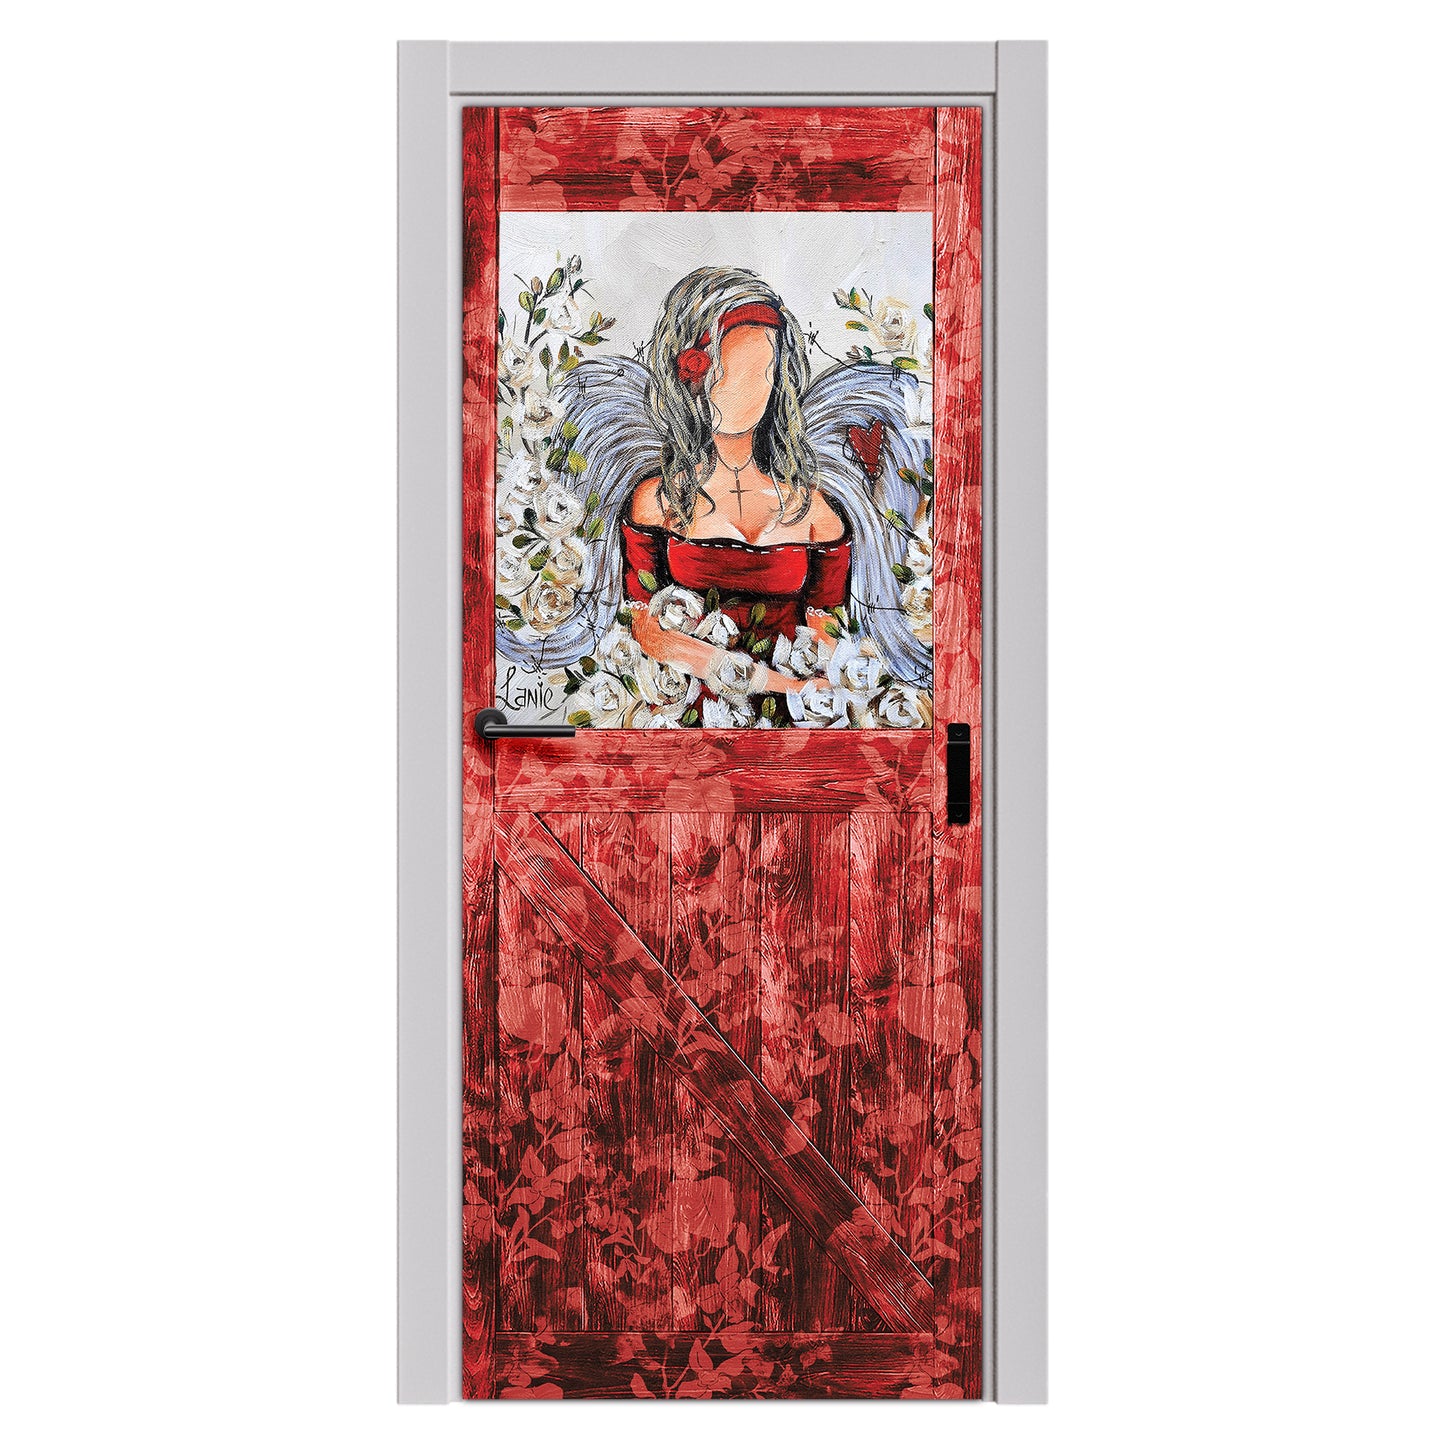 Decoupage Transfers - Red Dress Angel by Lanie's Art - Door